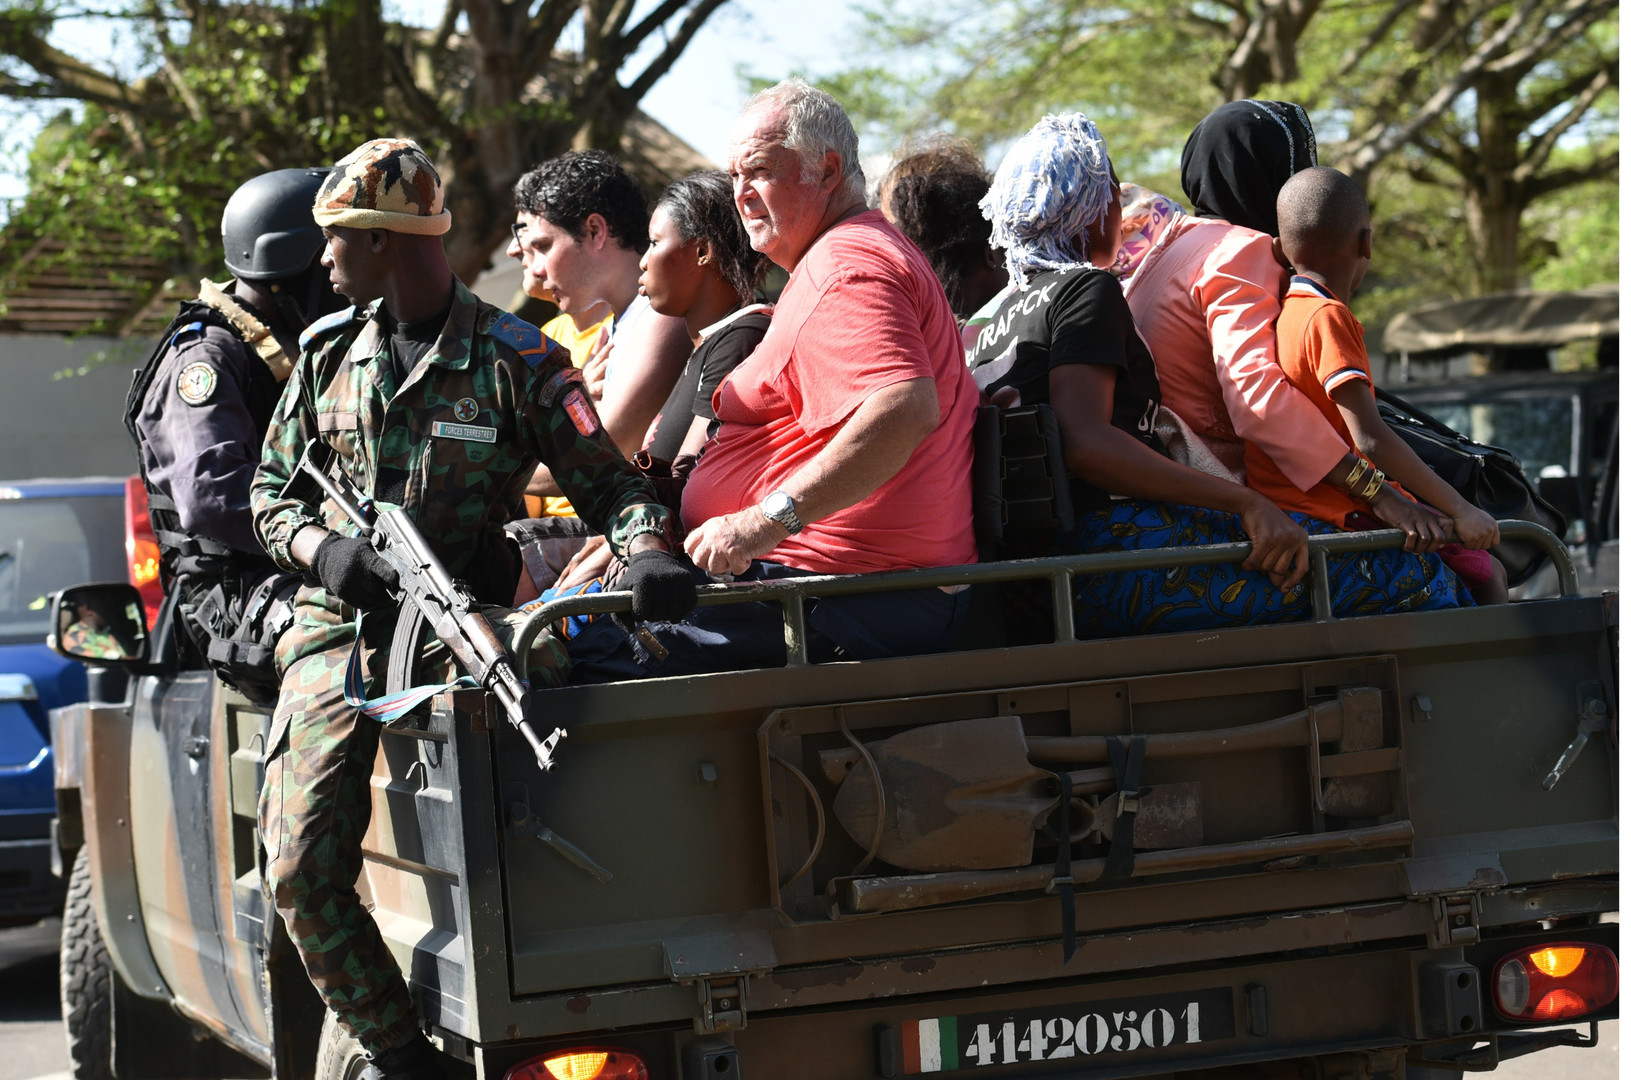 Al-Qaïda revendique l'attaque de Grand-Bassam en Côte d'Ivoire qui «viserait la France» (PHOTOS)